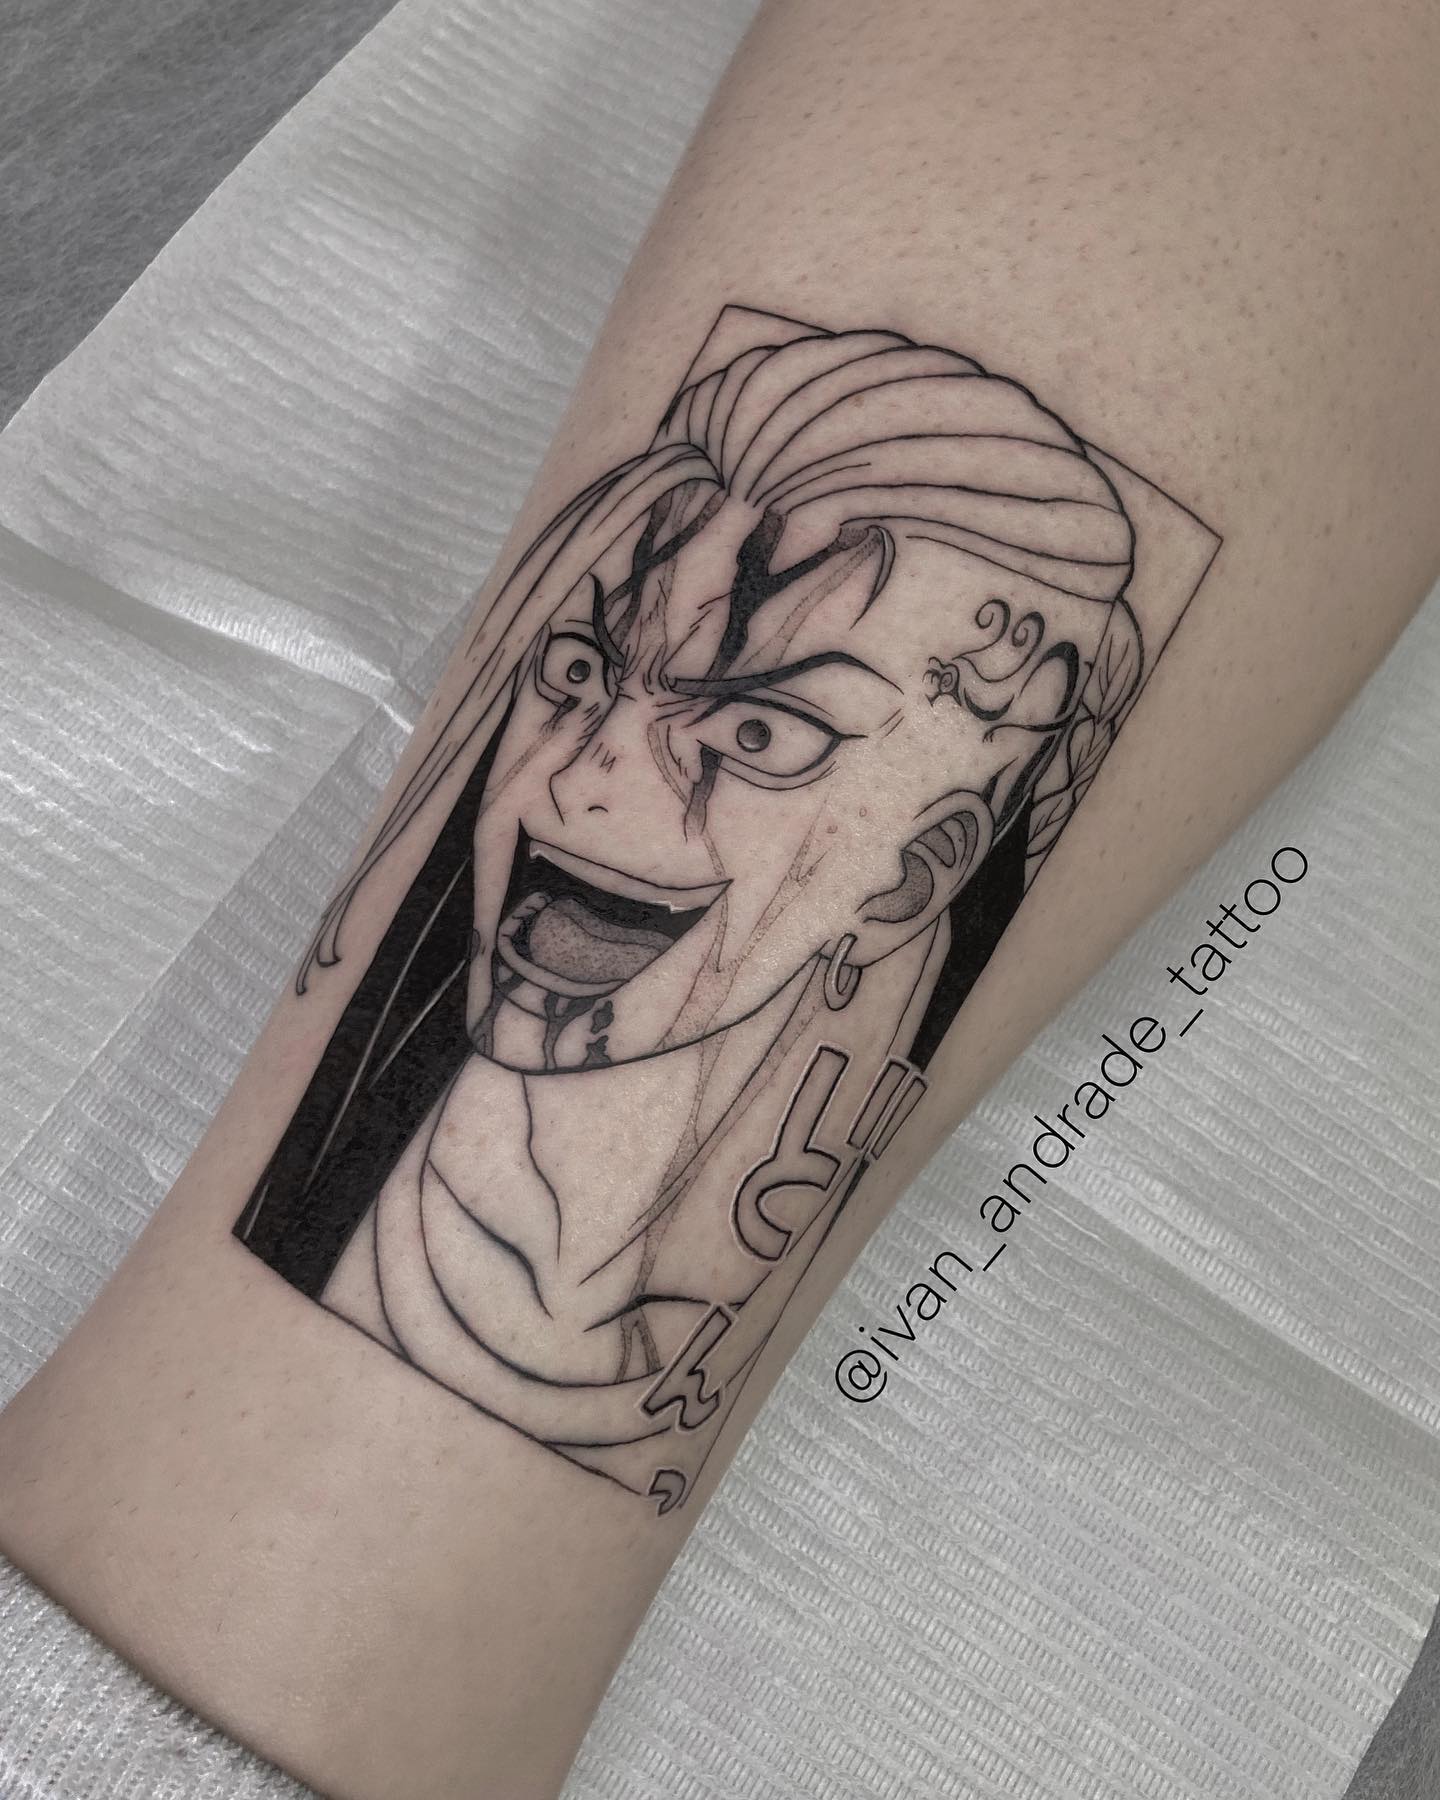 mitsuya draken tattoo